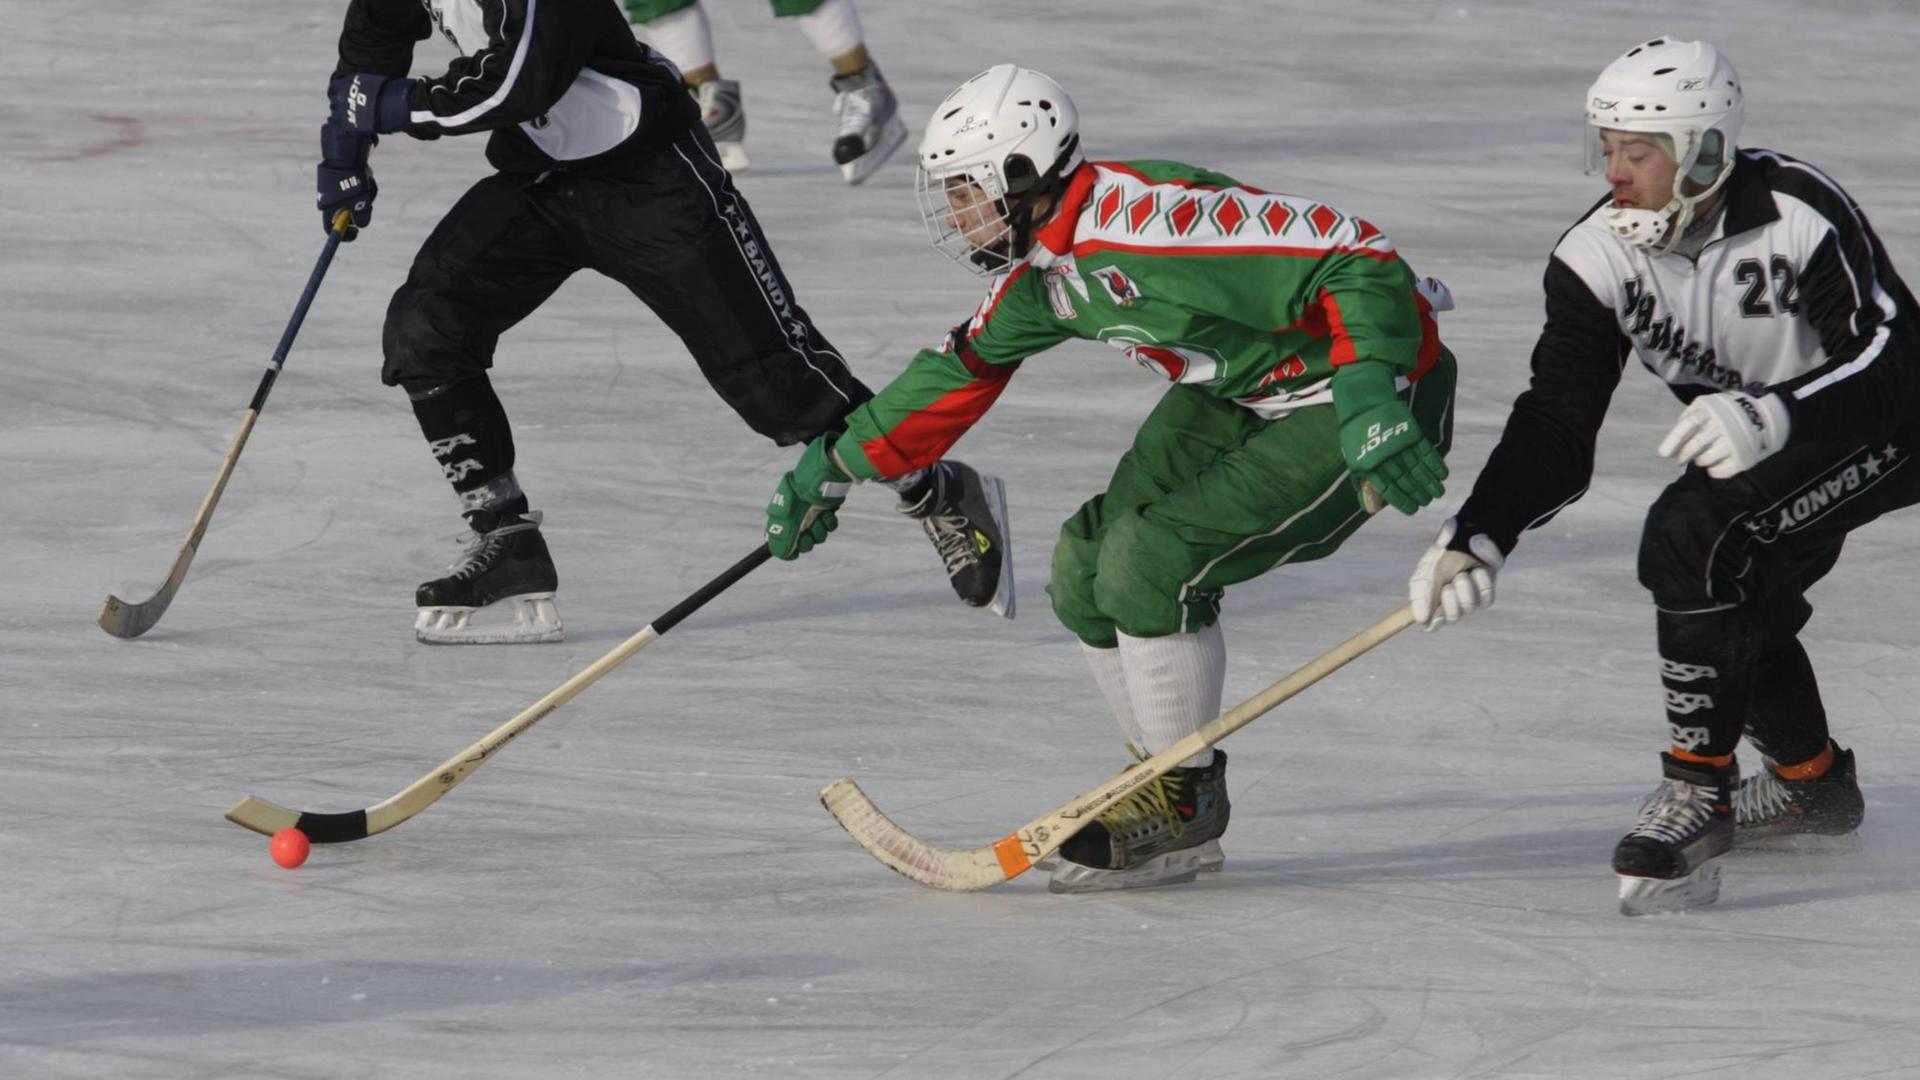 Russische Bandy-Spieler jagen auf dem Eis einem kleinen roten Ball hinterher. Bandy ist eine Mischung auf Eishockey und Fußball und besonders in Nord- und Osteuropa populär.